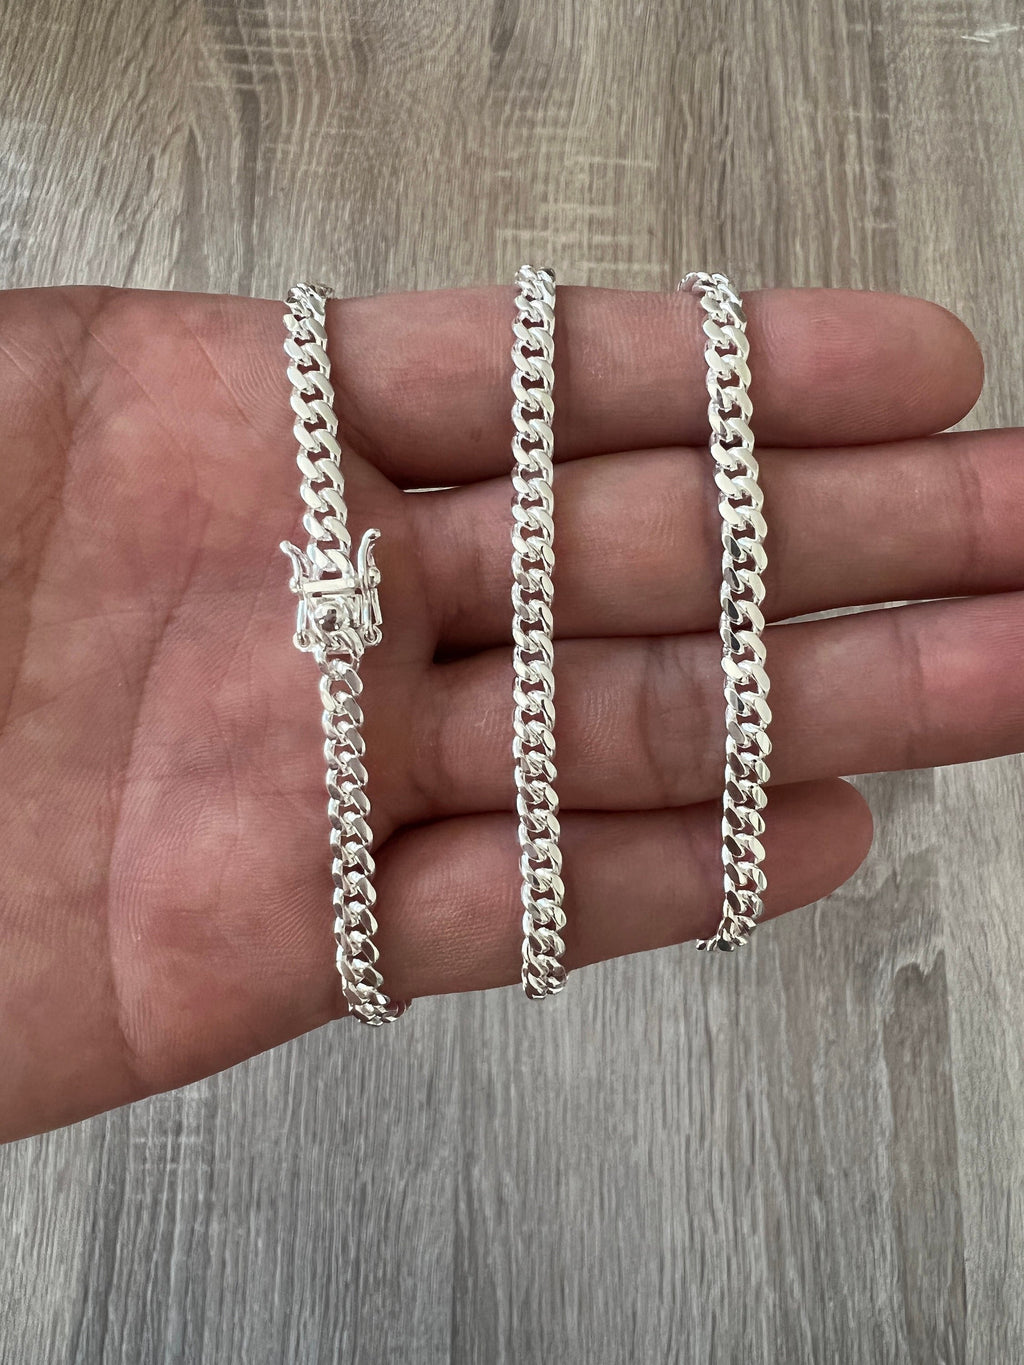 Box Chain Bracelet in Sterling Silver, 4mm